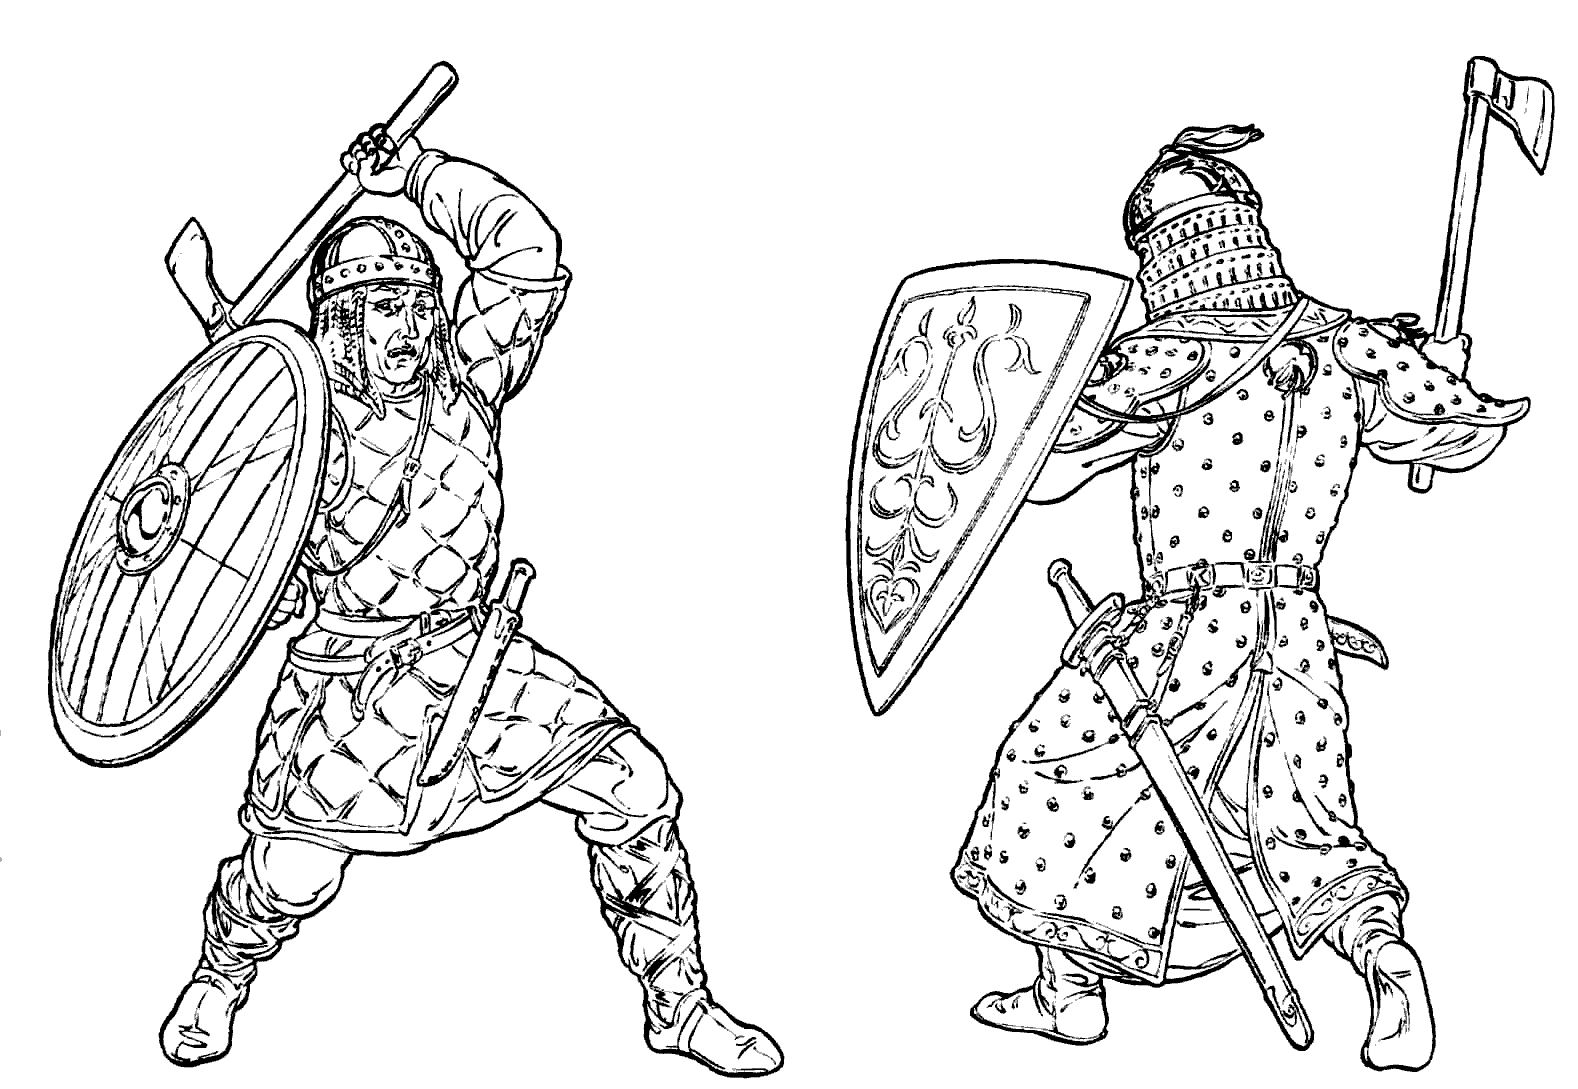 Dibujo para colorear - Lucha del guerrero